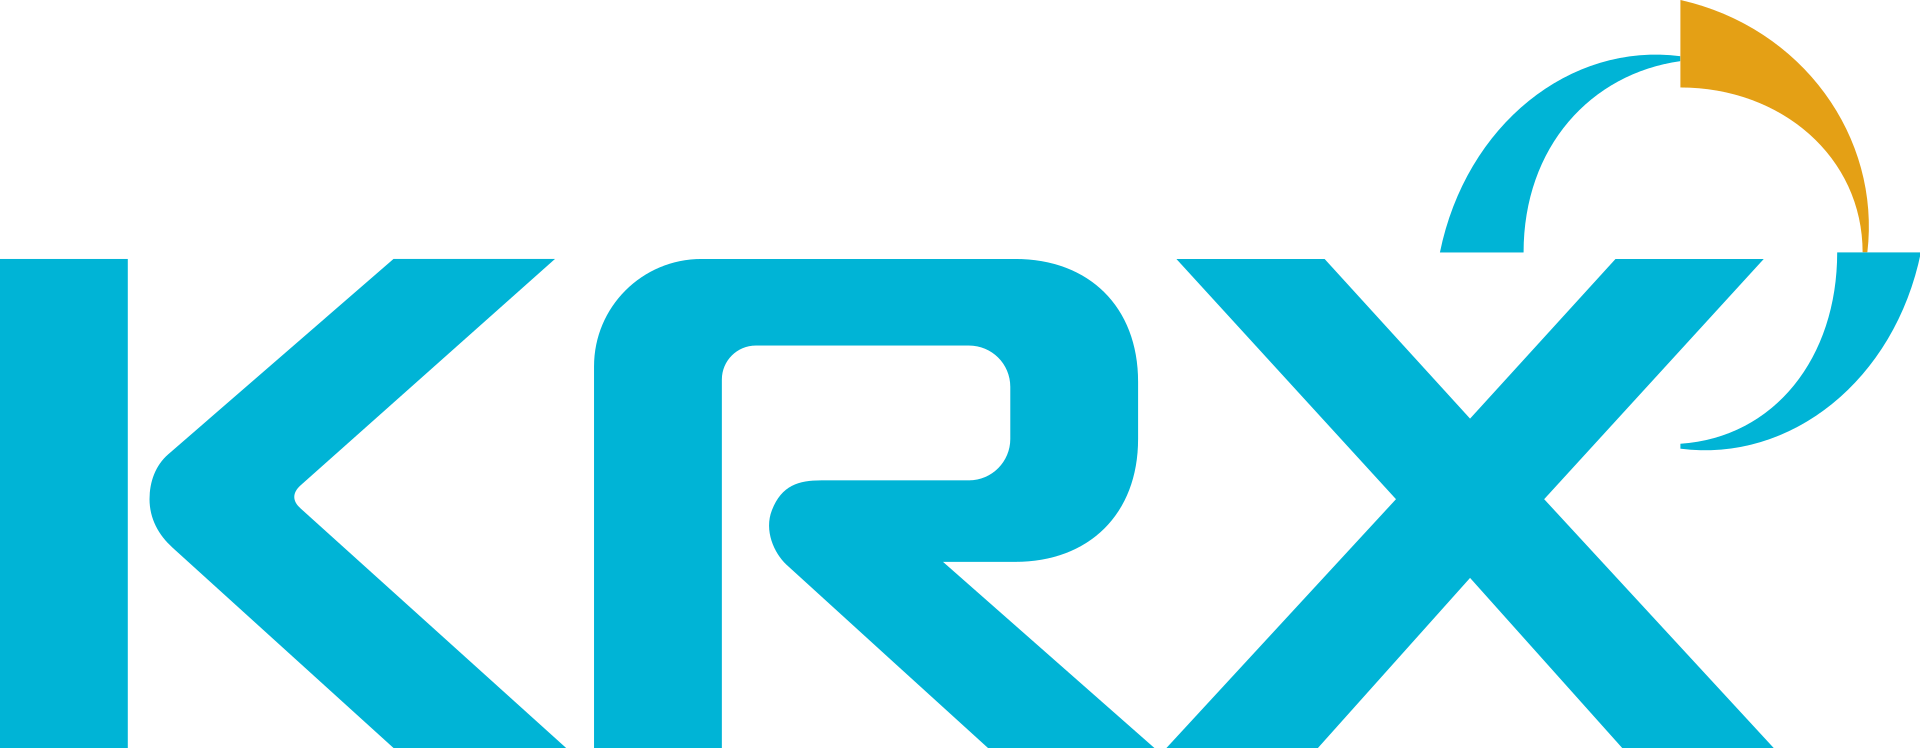 KRX - Korea Exchange - Корейская фондовая биржа